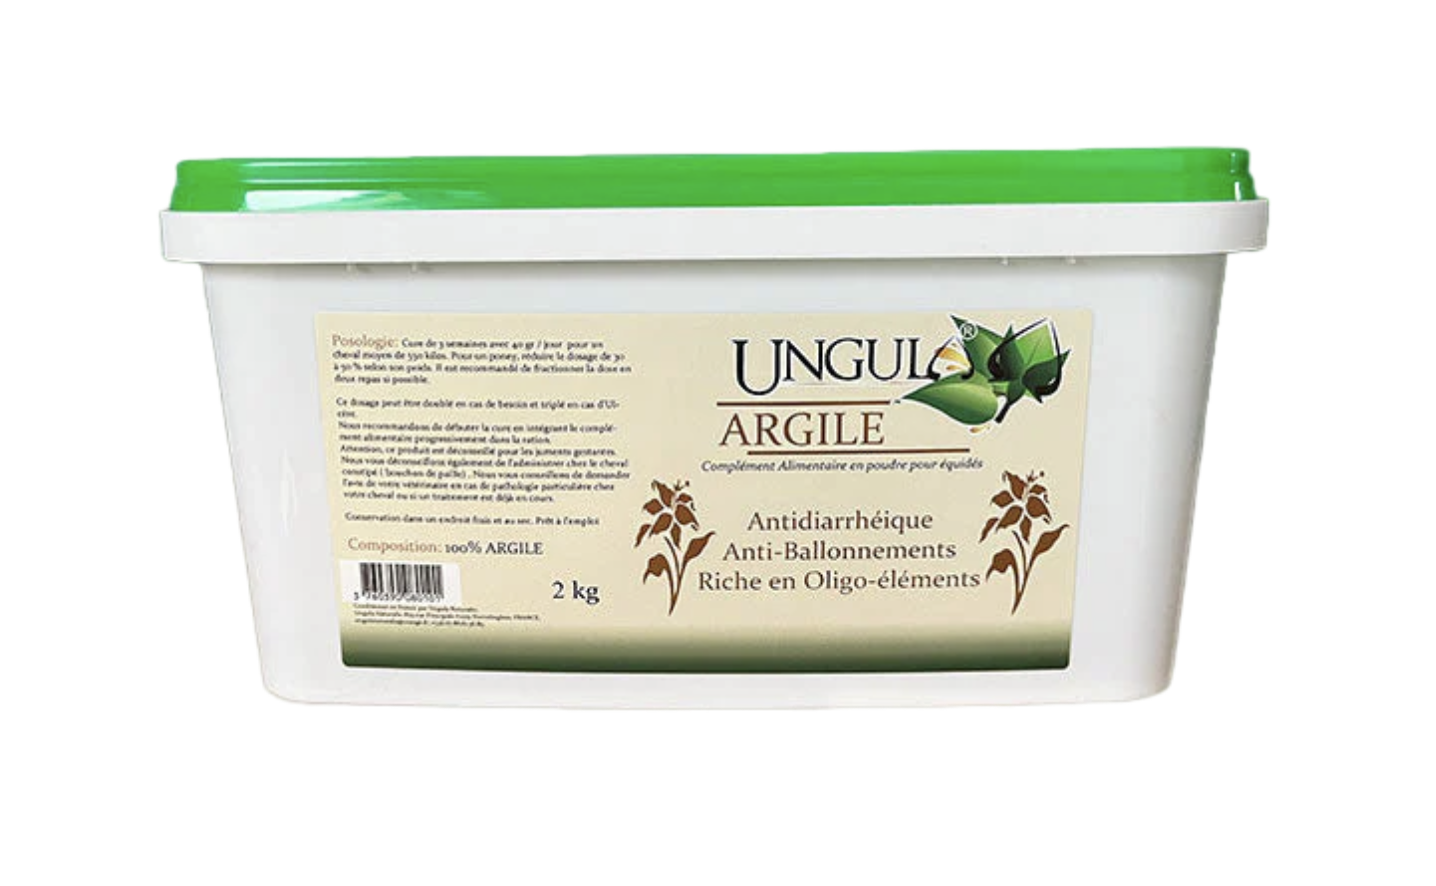 Argile 2kg - Ungula